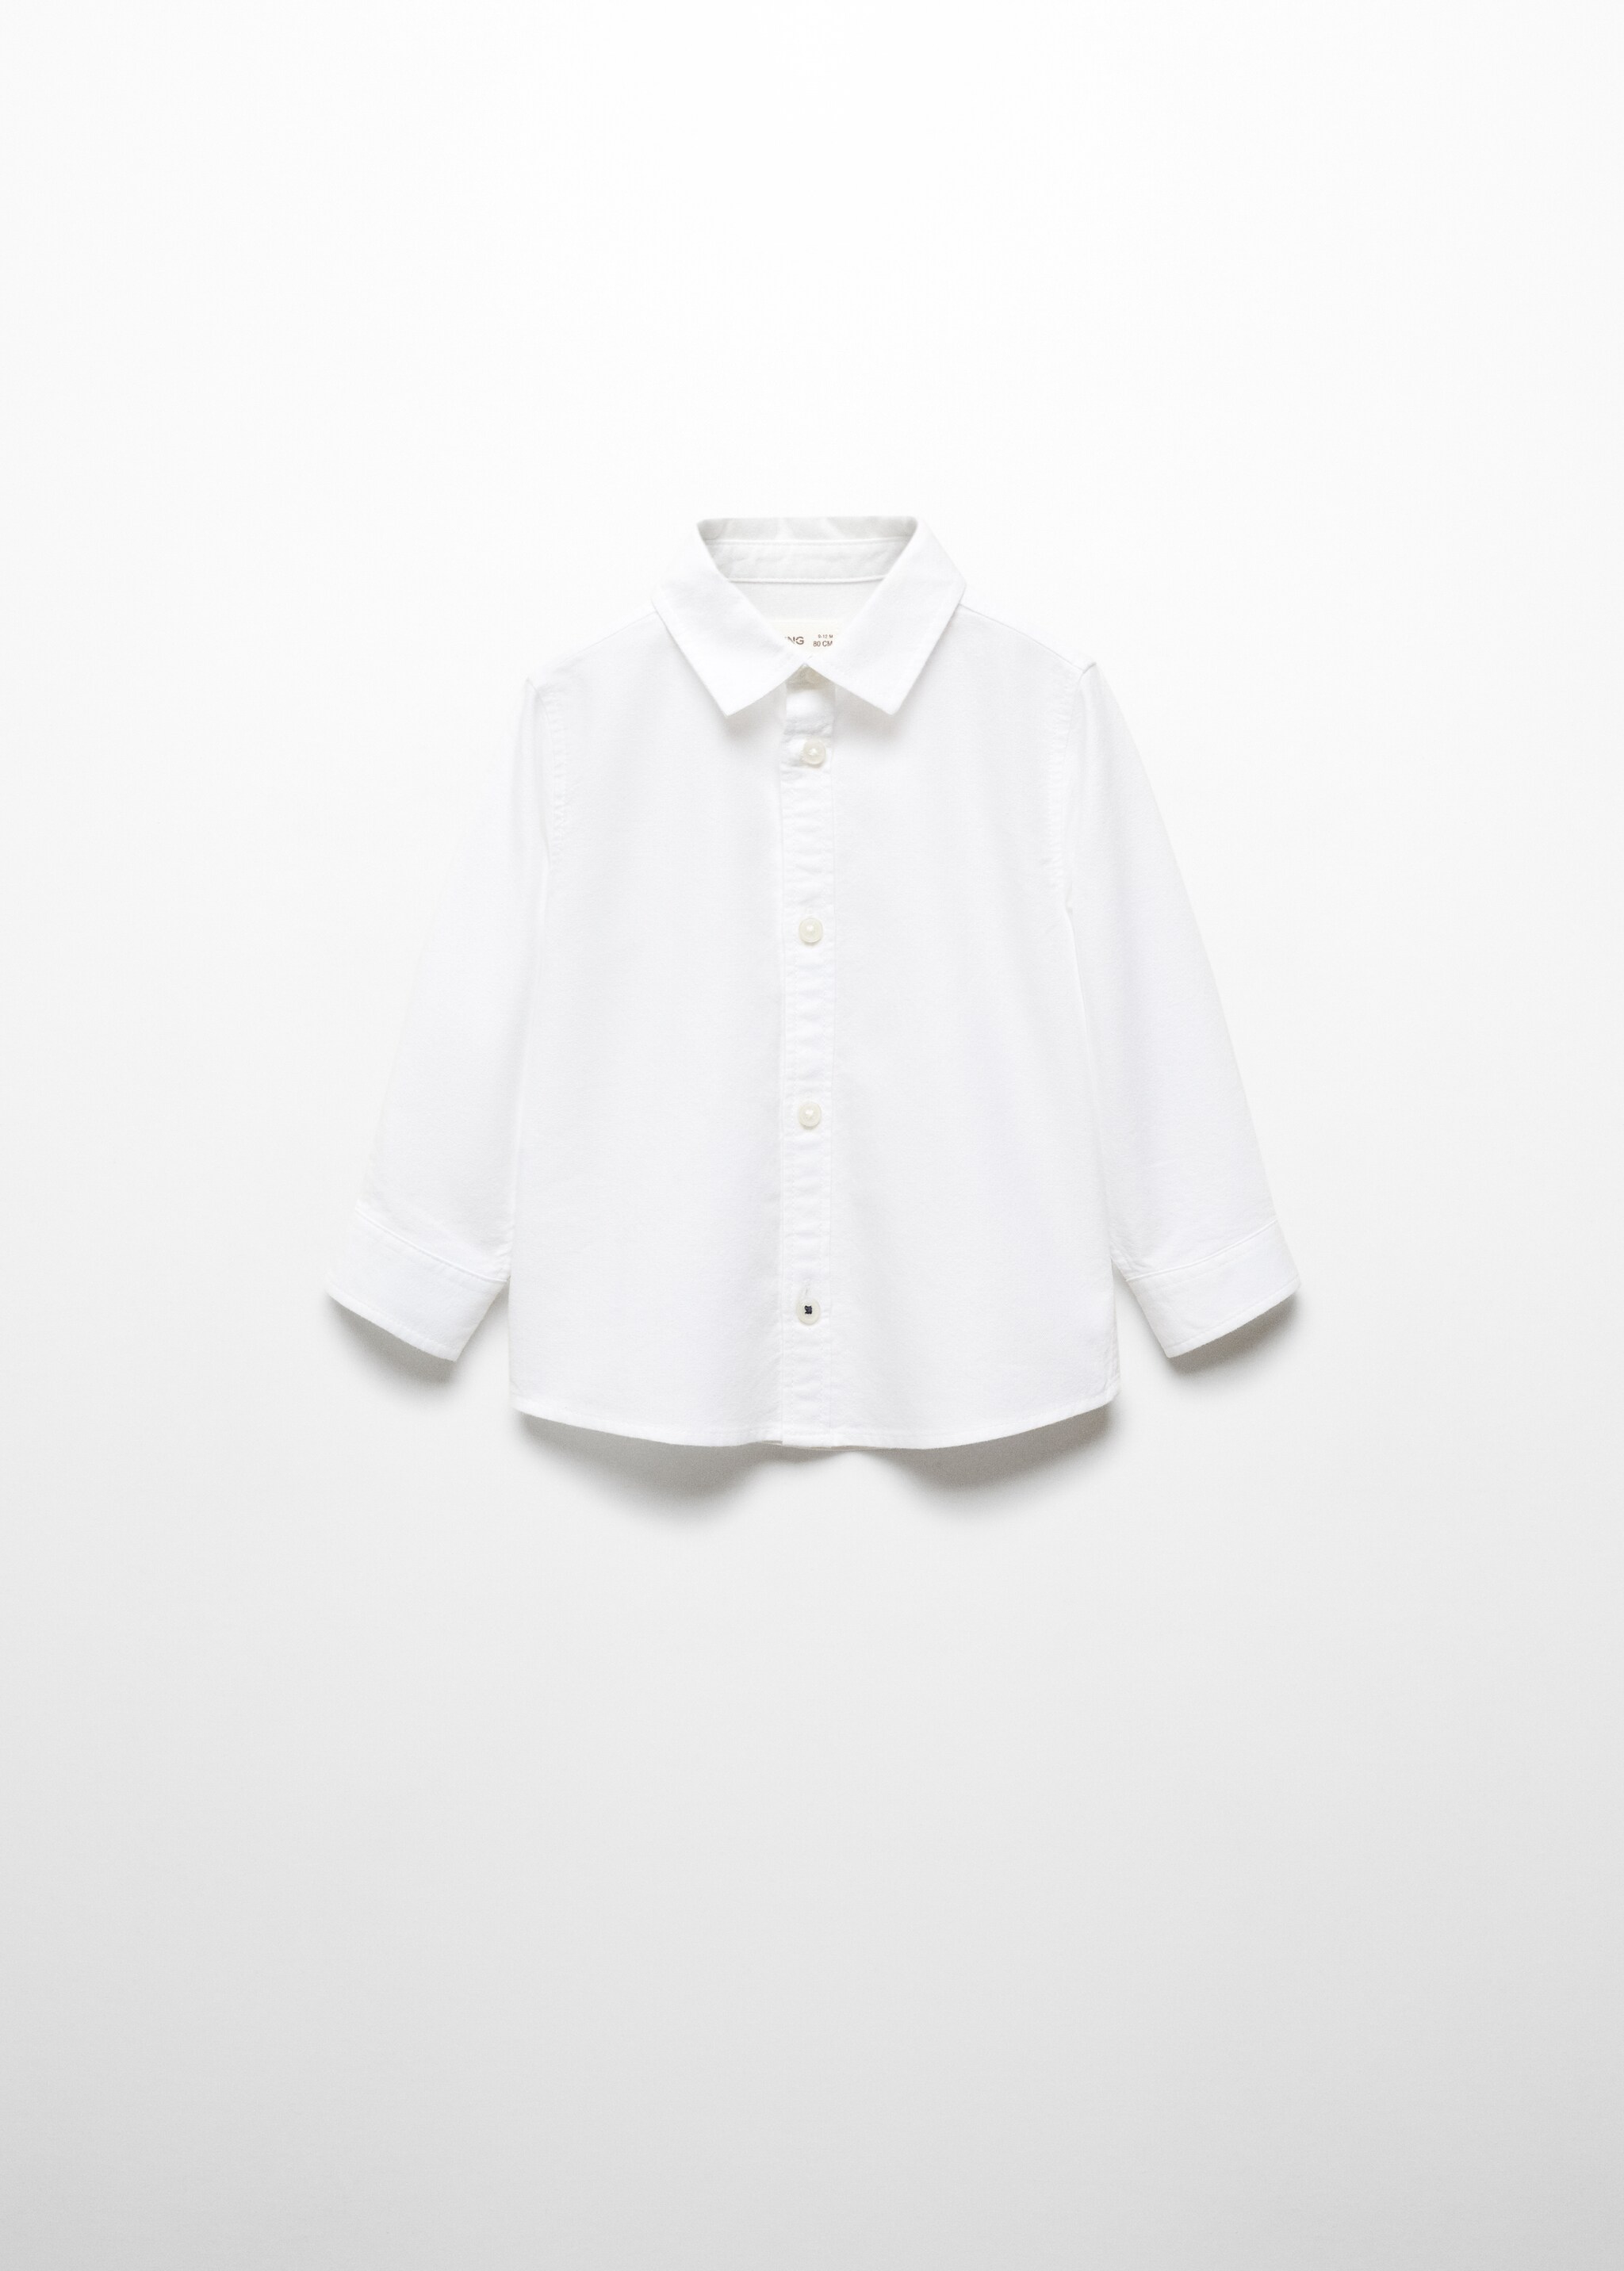 Хлопковая рубашка оксфорд - Изделие без модели